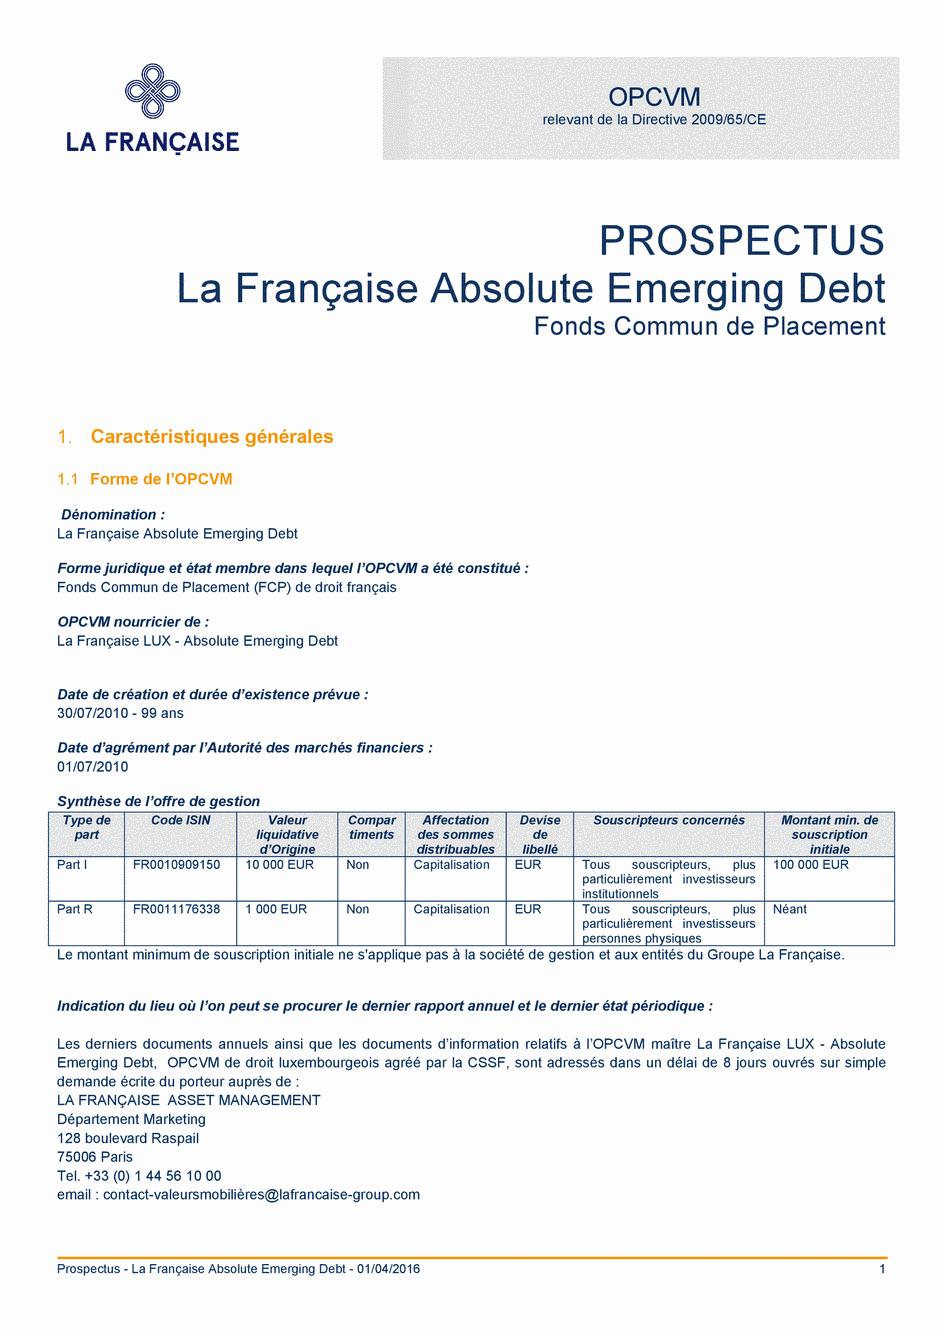 Prospectus La Française Absolute Emerging Debt - Part I - 01/04/2016 - Français